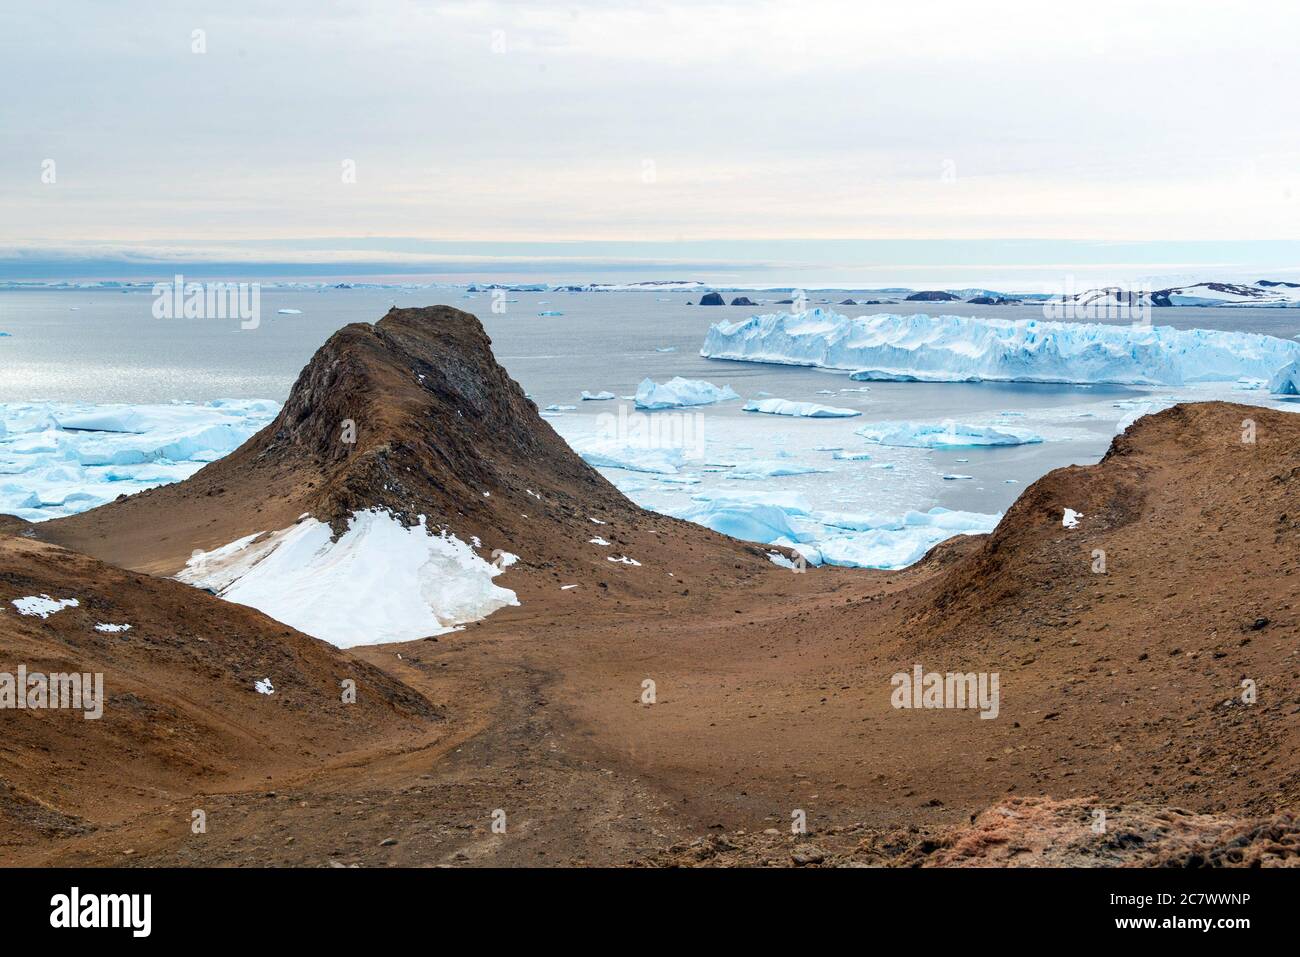 La natura e i paesaggi aspri dell'Antartide. L'oceano, iceberg e terra fredda. Foto Stock